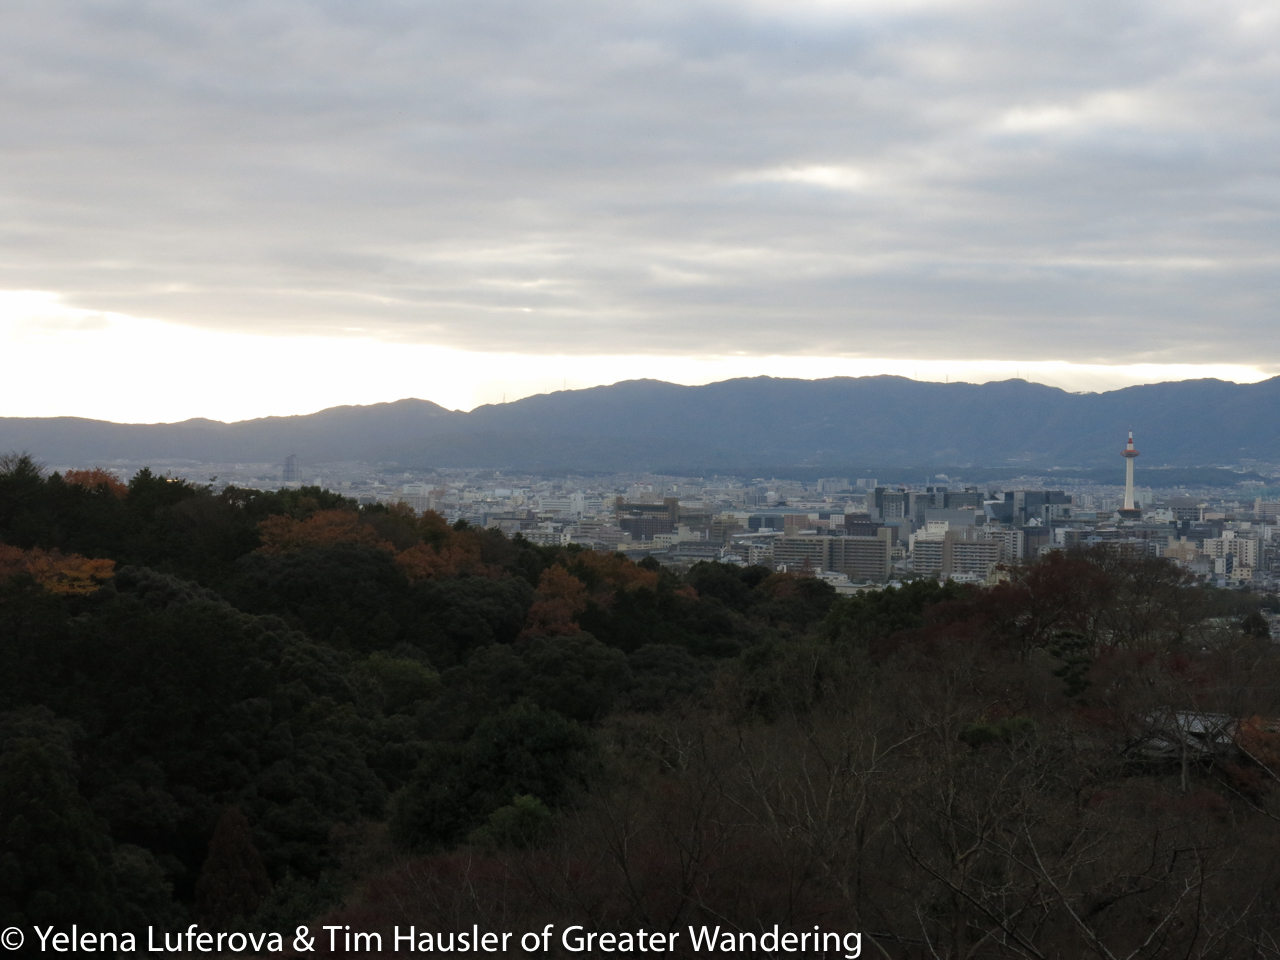 The view of Kyoto from Kiyomizu